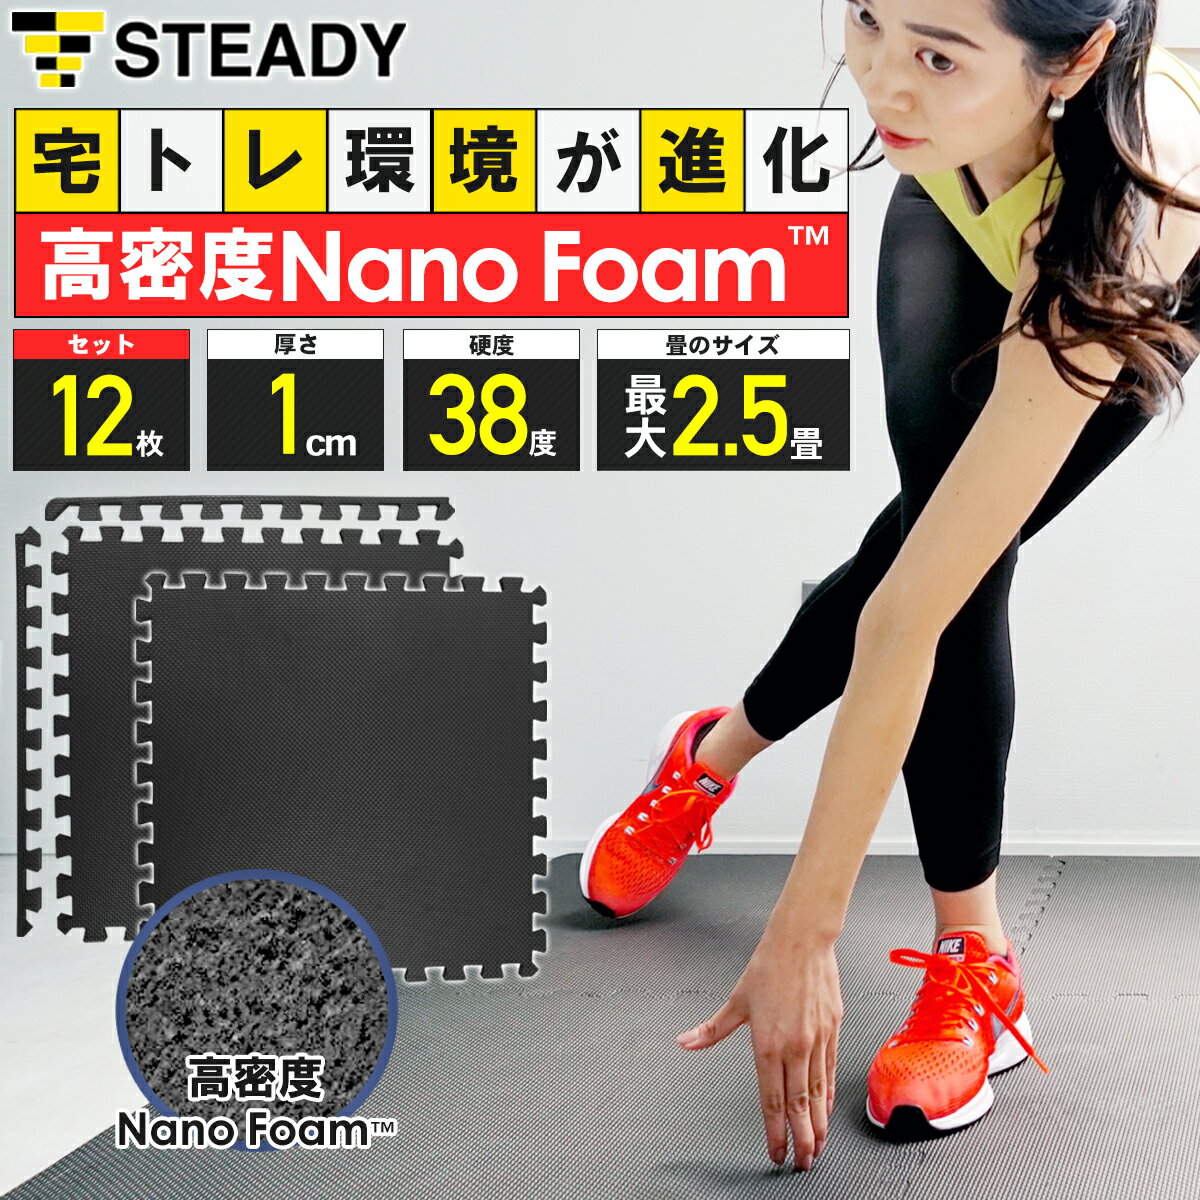 【1年保証】 ジョイントマット 高密度Nano Foam 防音・関節保護クッション 軽量 抗菌 断熱素材 64×64×1cm 12枚セット フロアマット STEADY ステディ トレーニングマット ストレッチマット ST136-B12